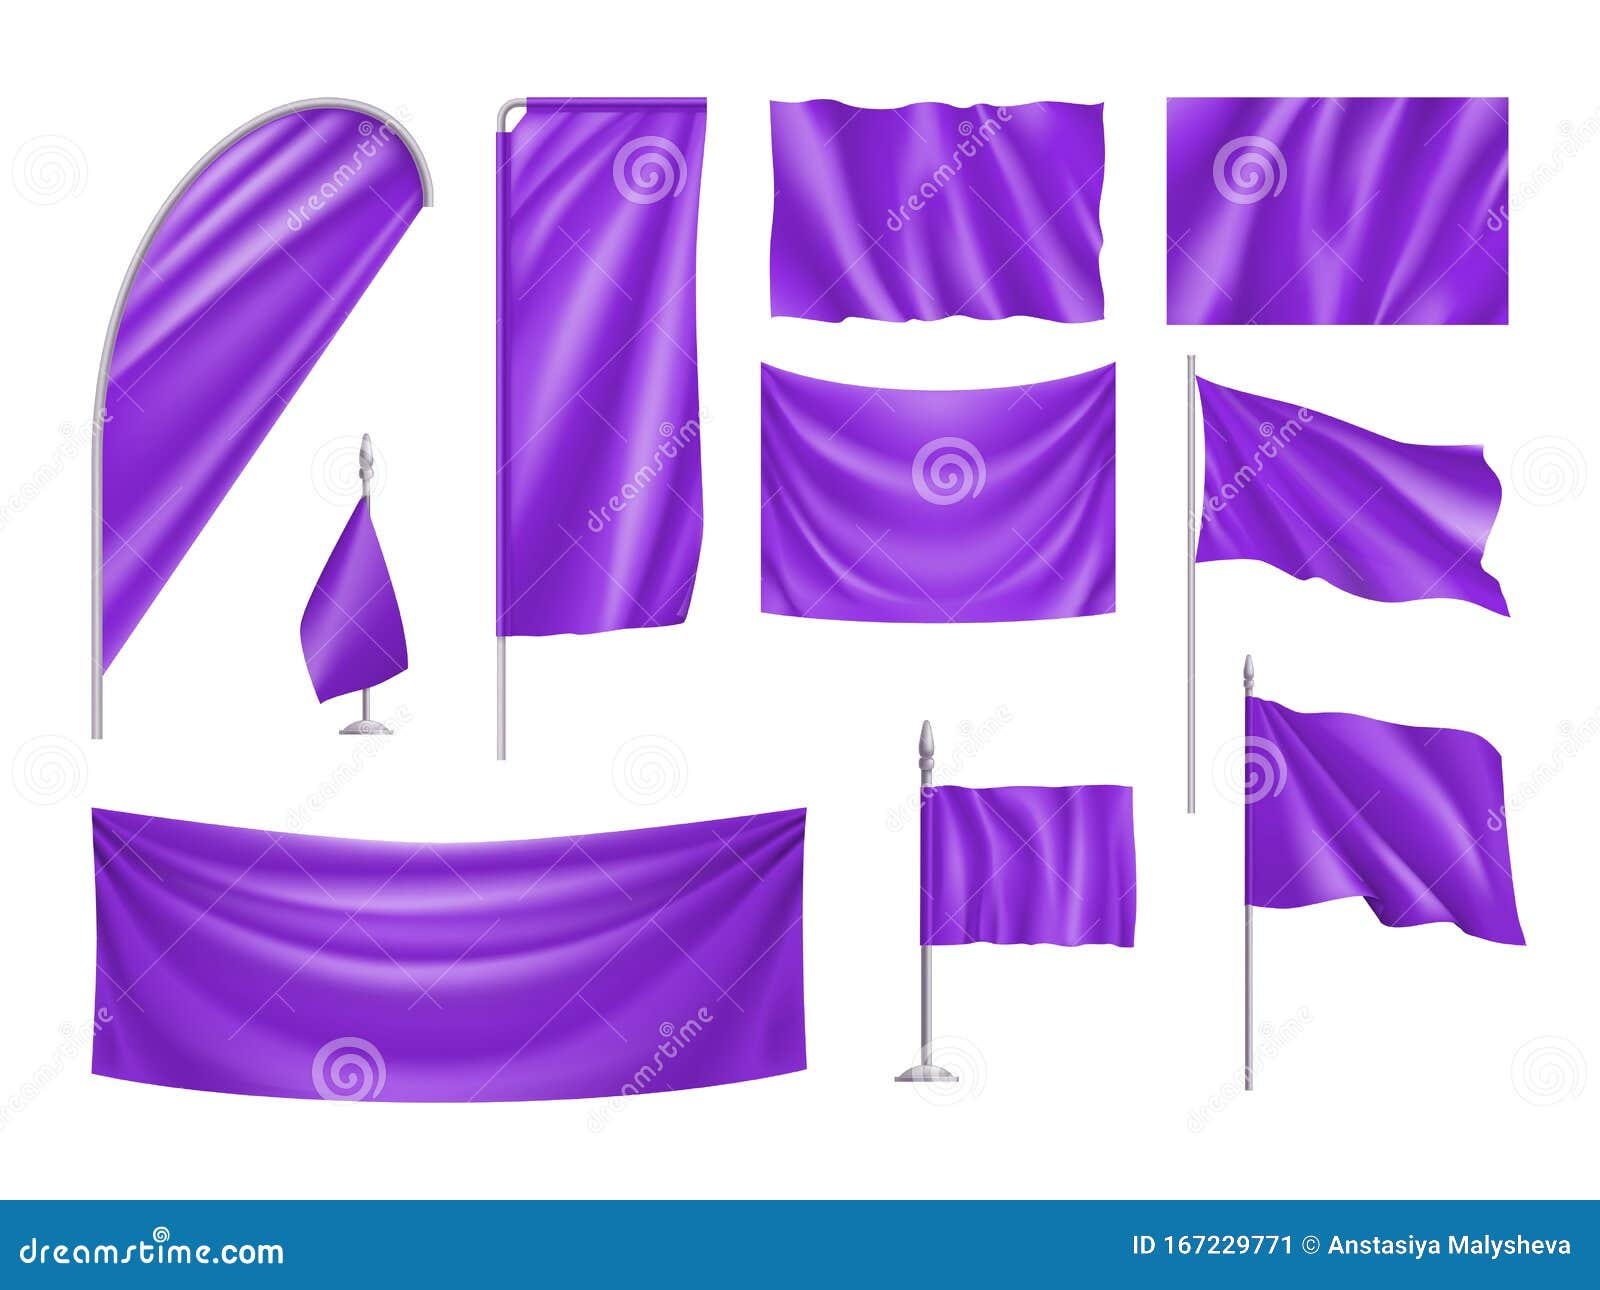 Черно серый фиолетовый флаг. Макет флага. Флажки на праздник мокап. Флажки прямоугольной формы. Флажок для брендирования.